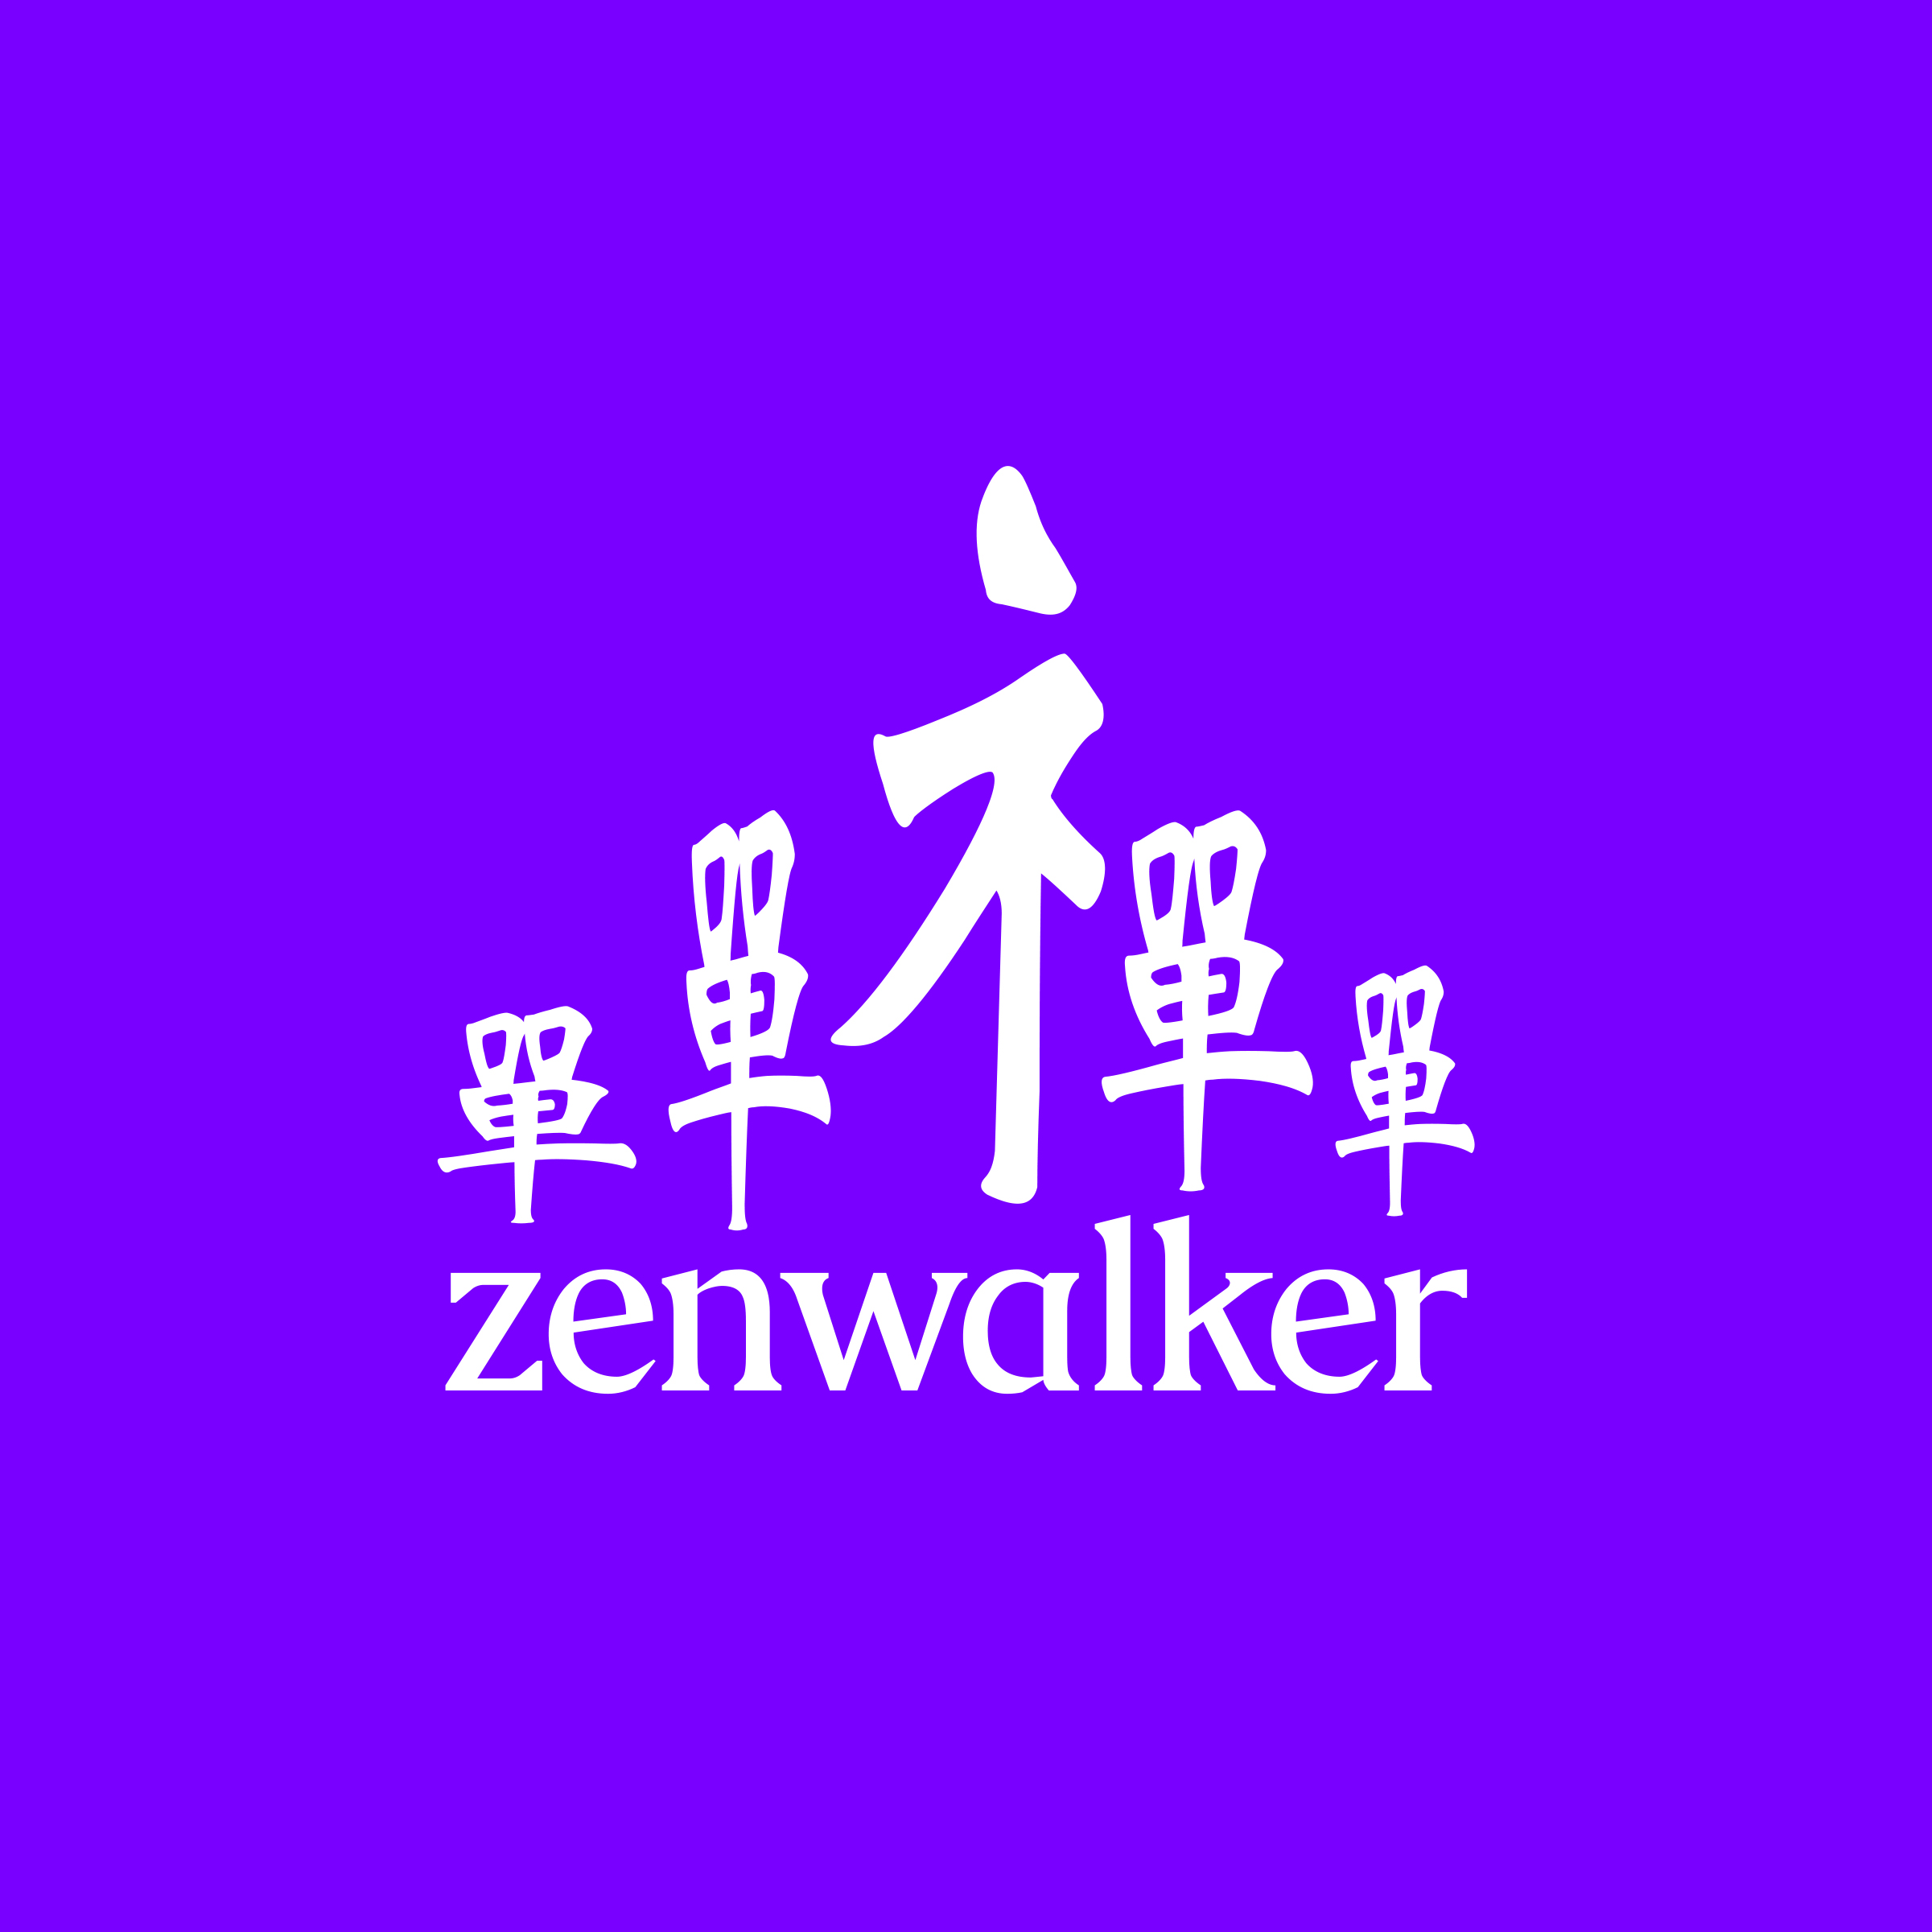 zenwalker